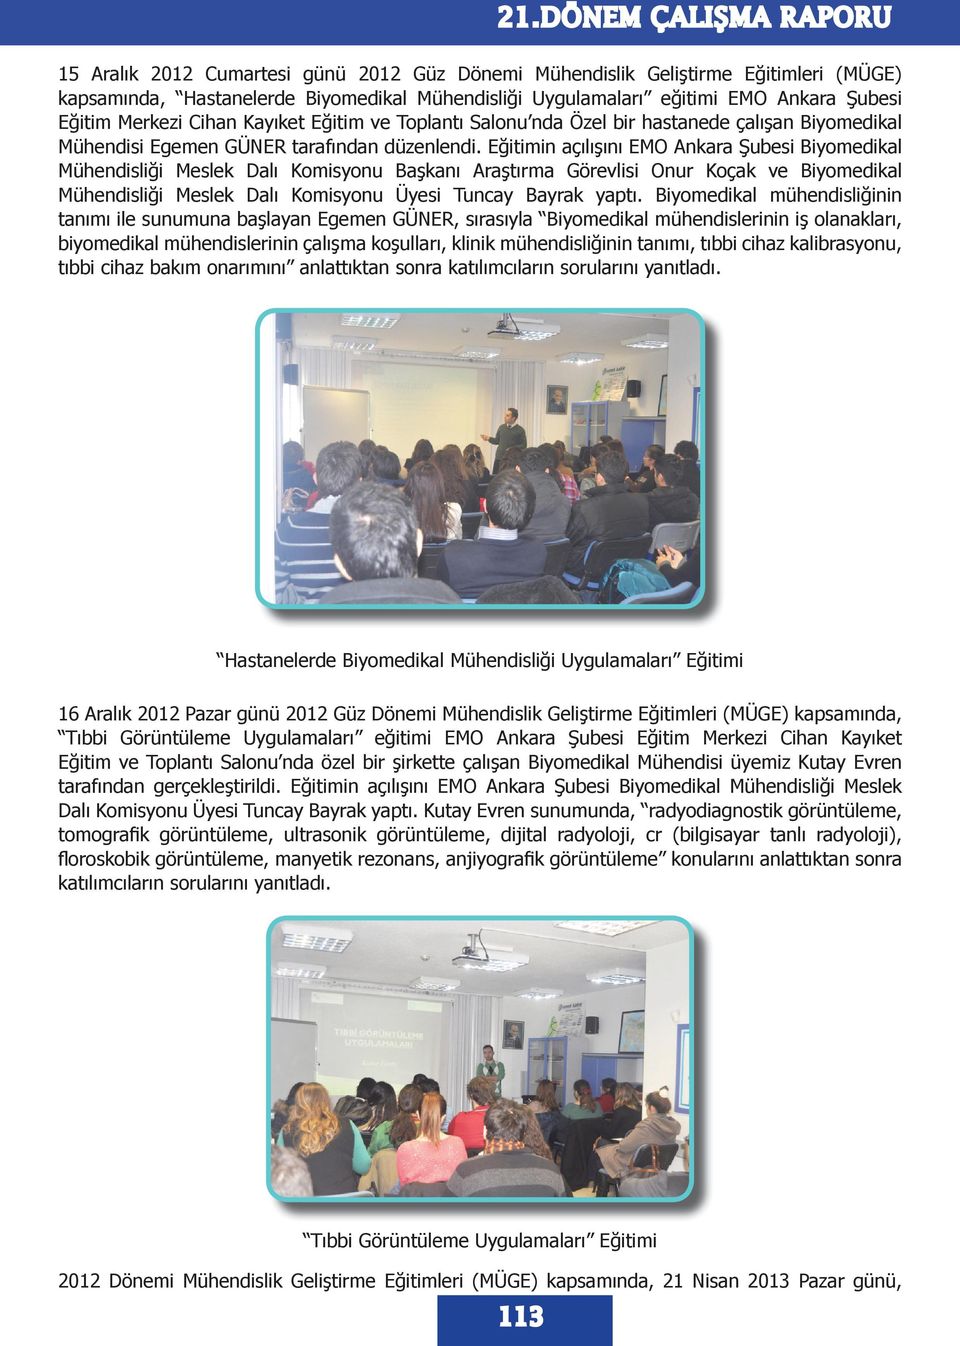 Eğitimin açılışını EMO Ankara Şubesi Biyomedikal Mühendisliği Meslek Dalı Komisyonu Başkanı Araştırma Görevlisi Onur Koçak ve Biyomedikal Mühendisliği Meslek Dalı Komisyonu Üyesi Tuncay Bayrak yaptı.